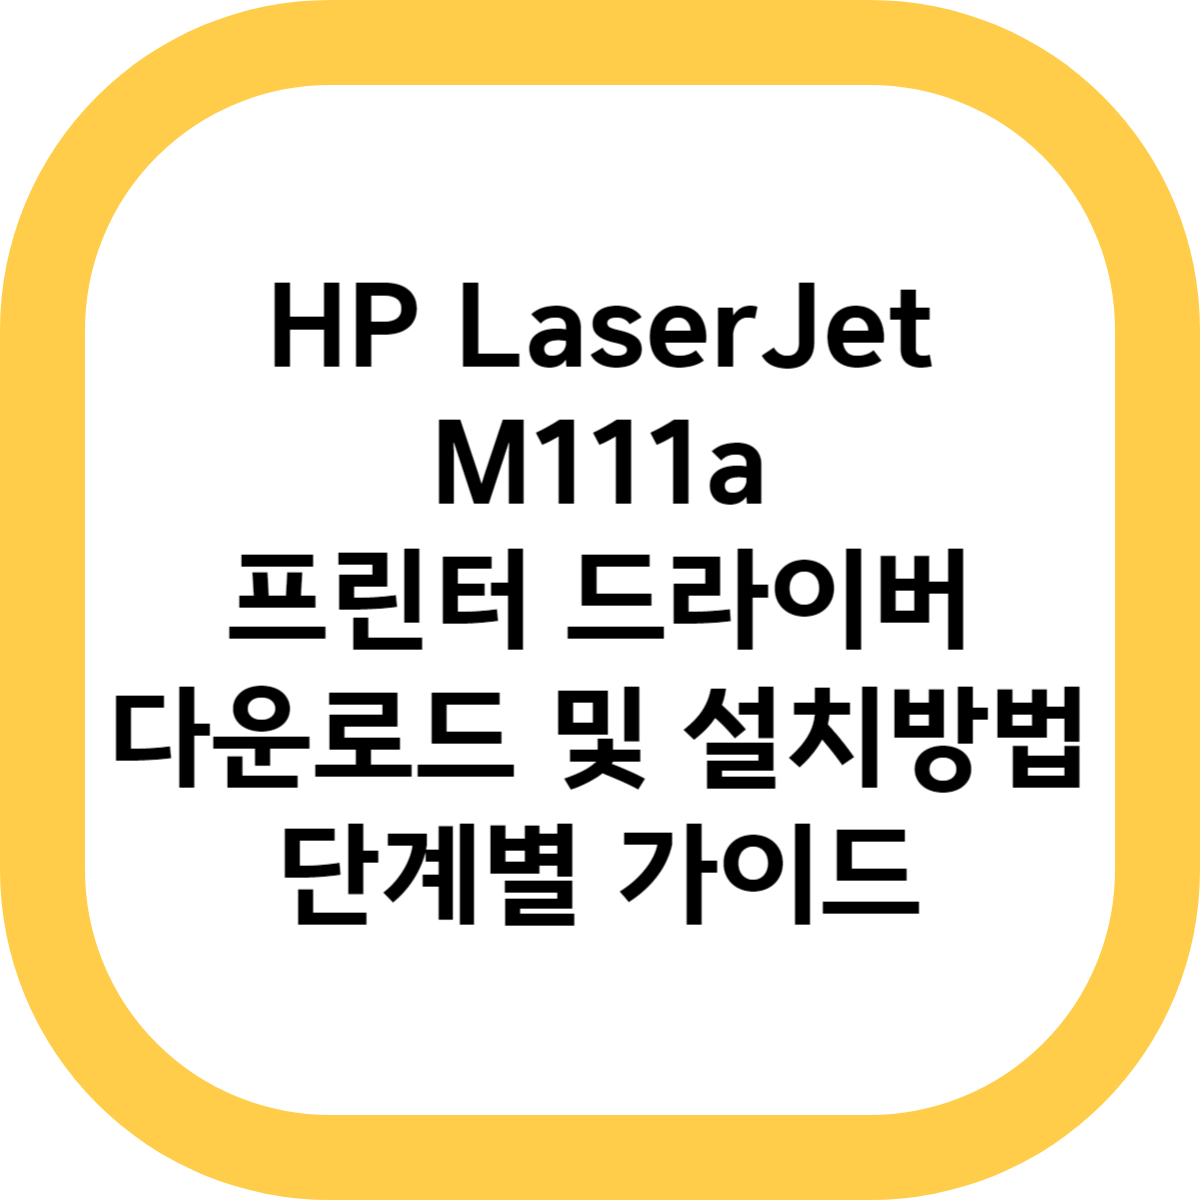 HP LaserJet M111a 프린터 드라이버 다운로드 및 설치방법 단계별 가이드